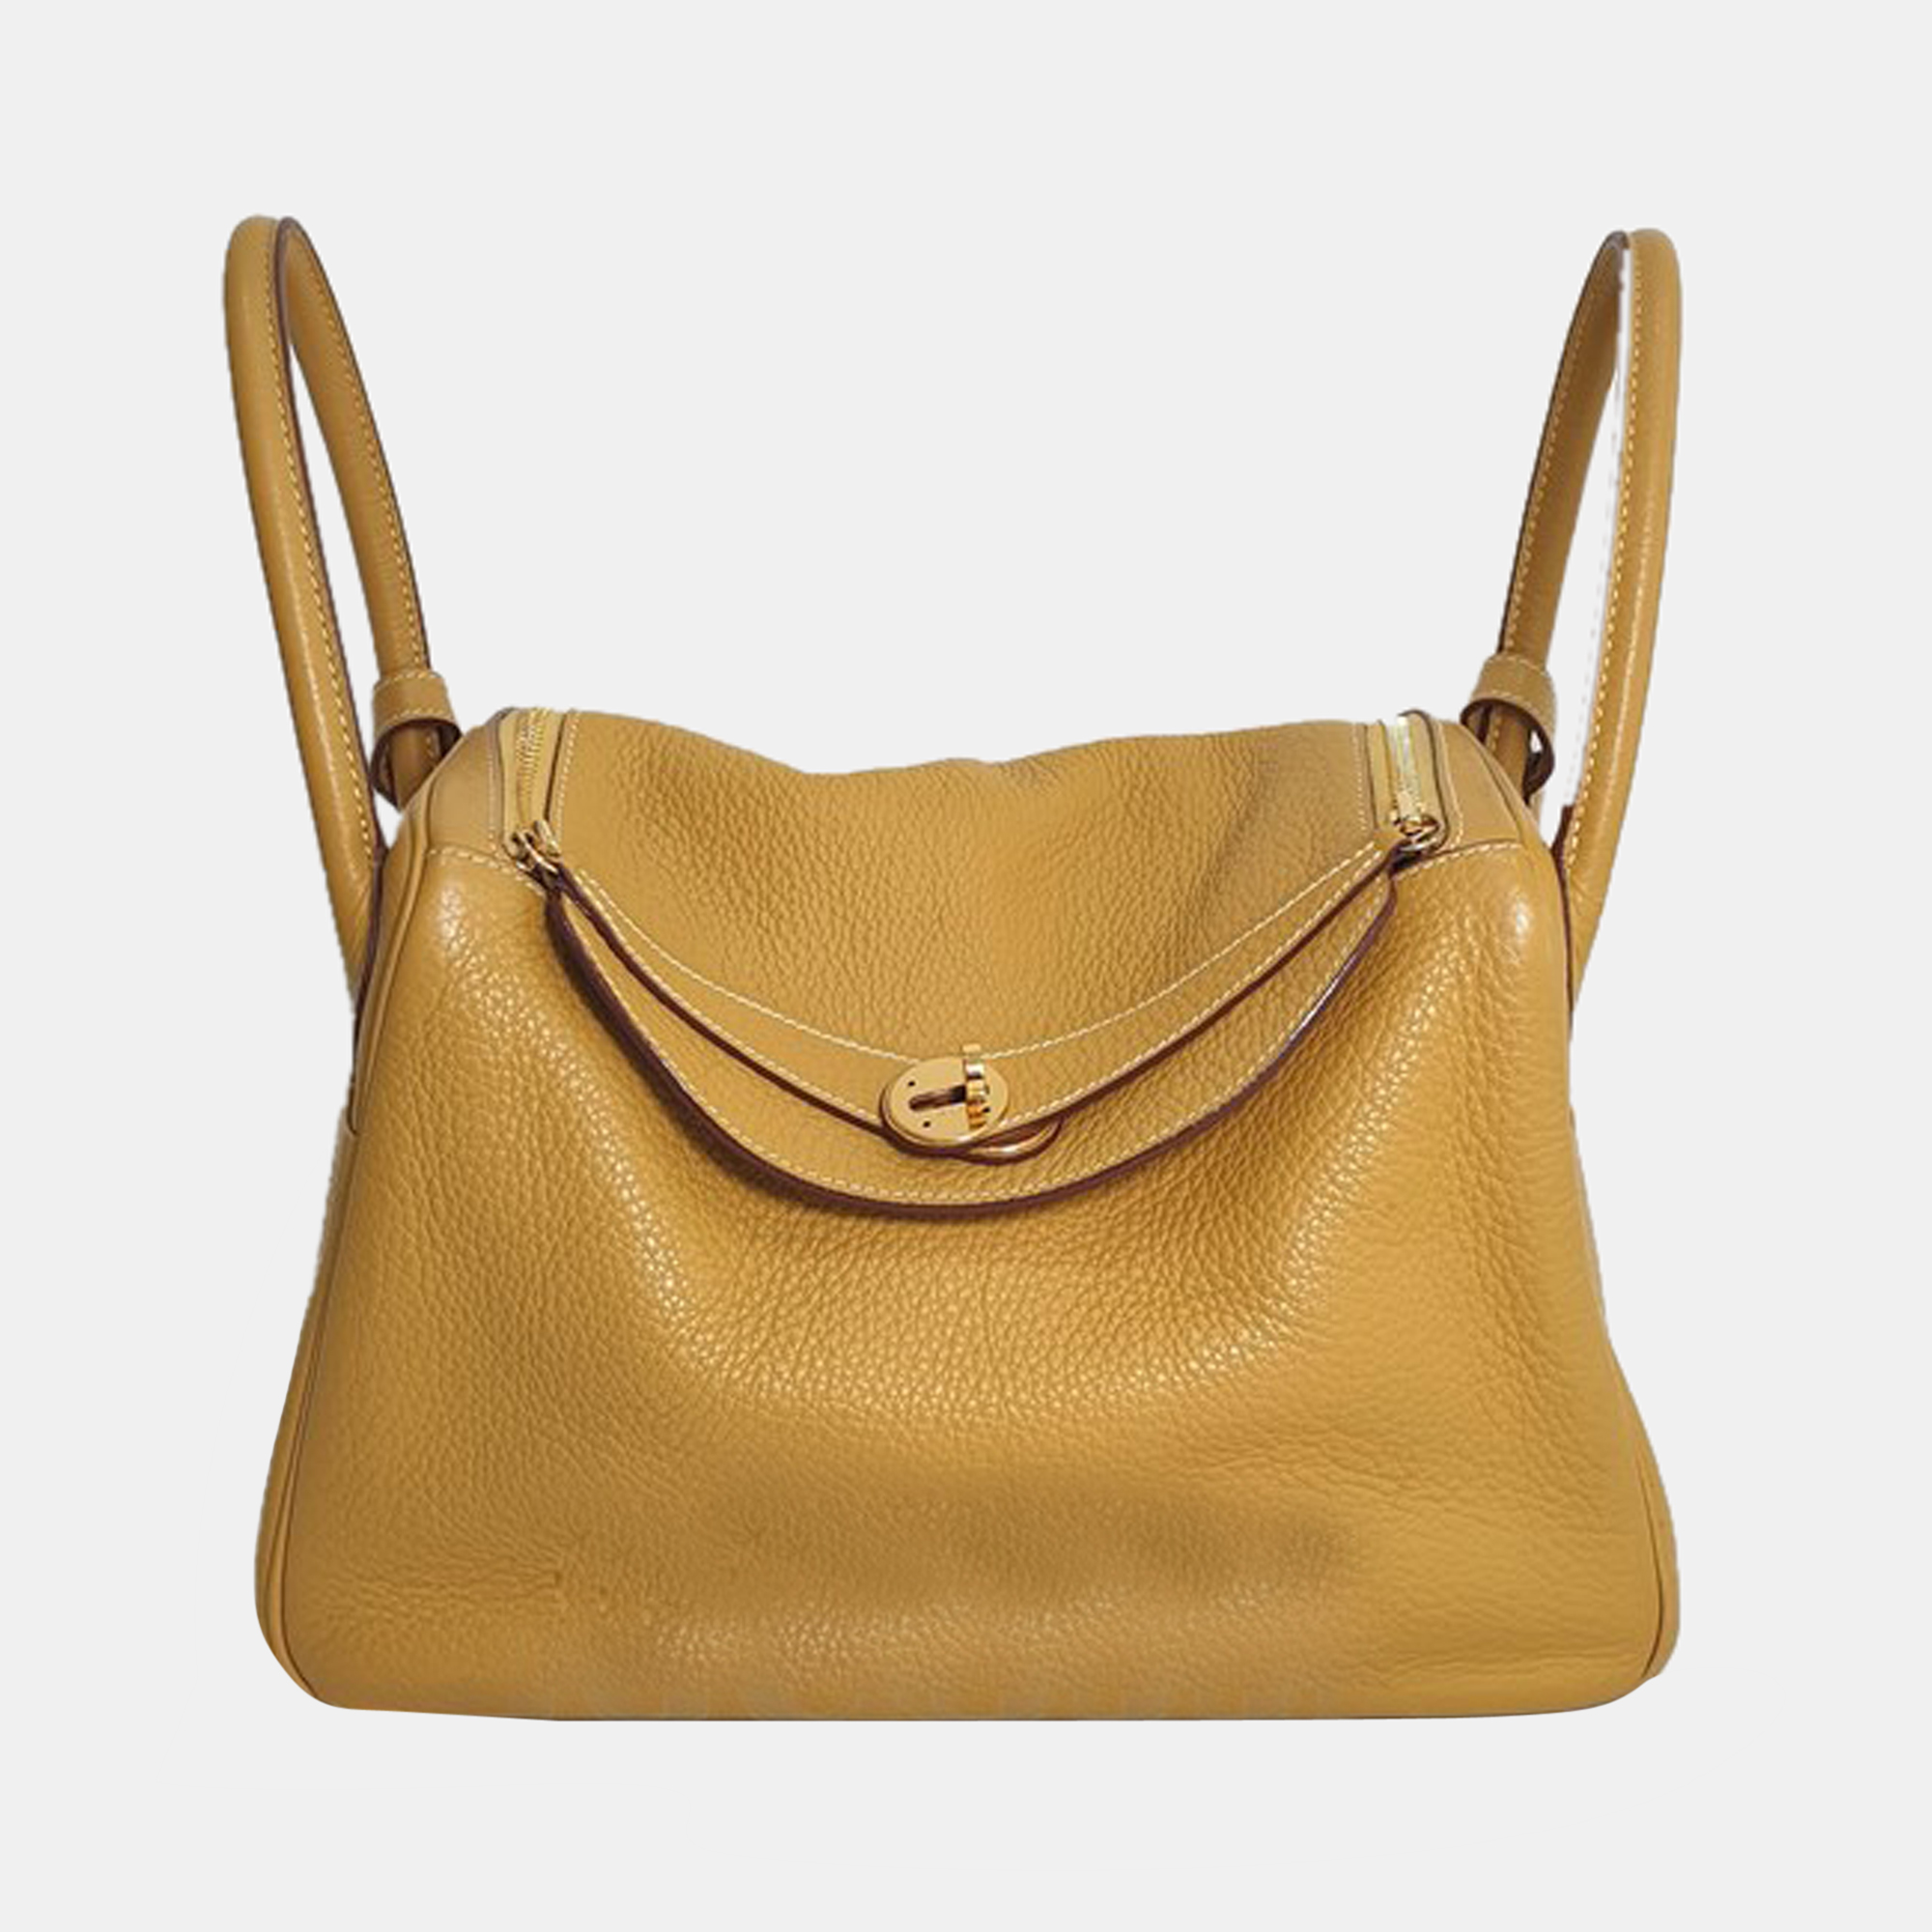 Hermès Lindy Clemence Handbag